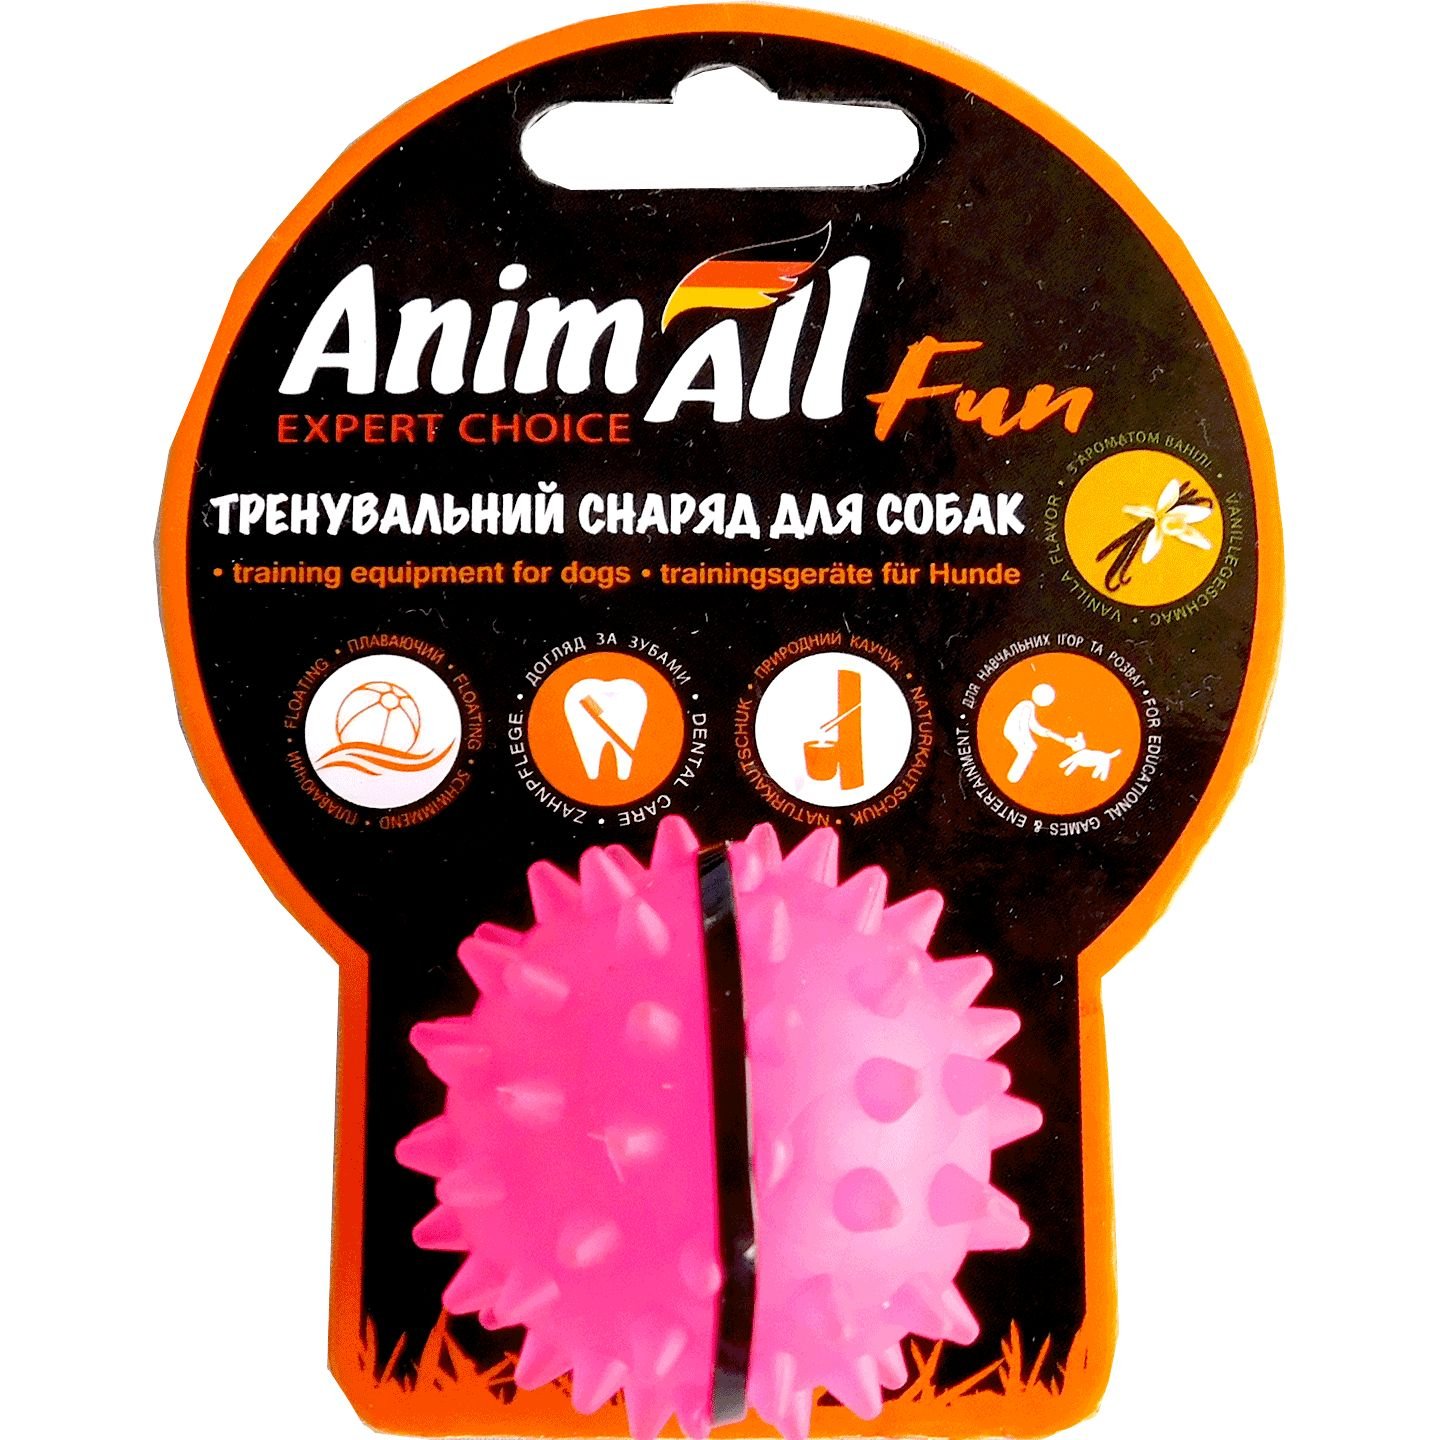 Іграшка для собак AnimAll Fun AGrizZzly М'яч Каштан коралова 5 см - фото 1